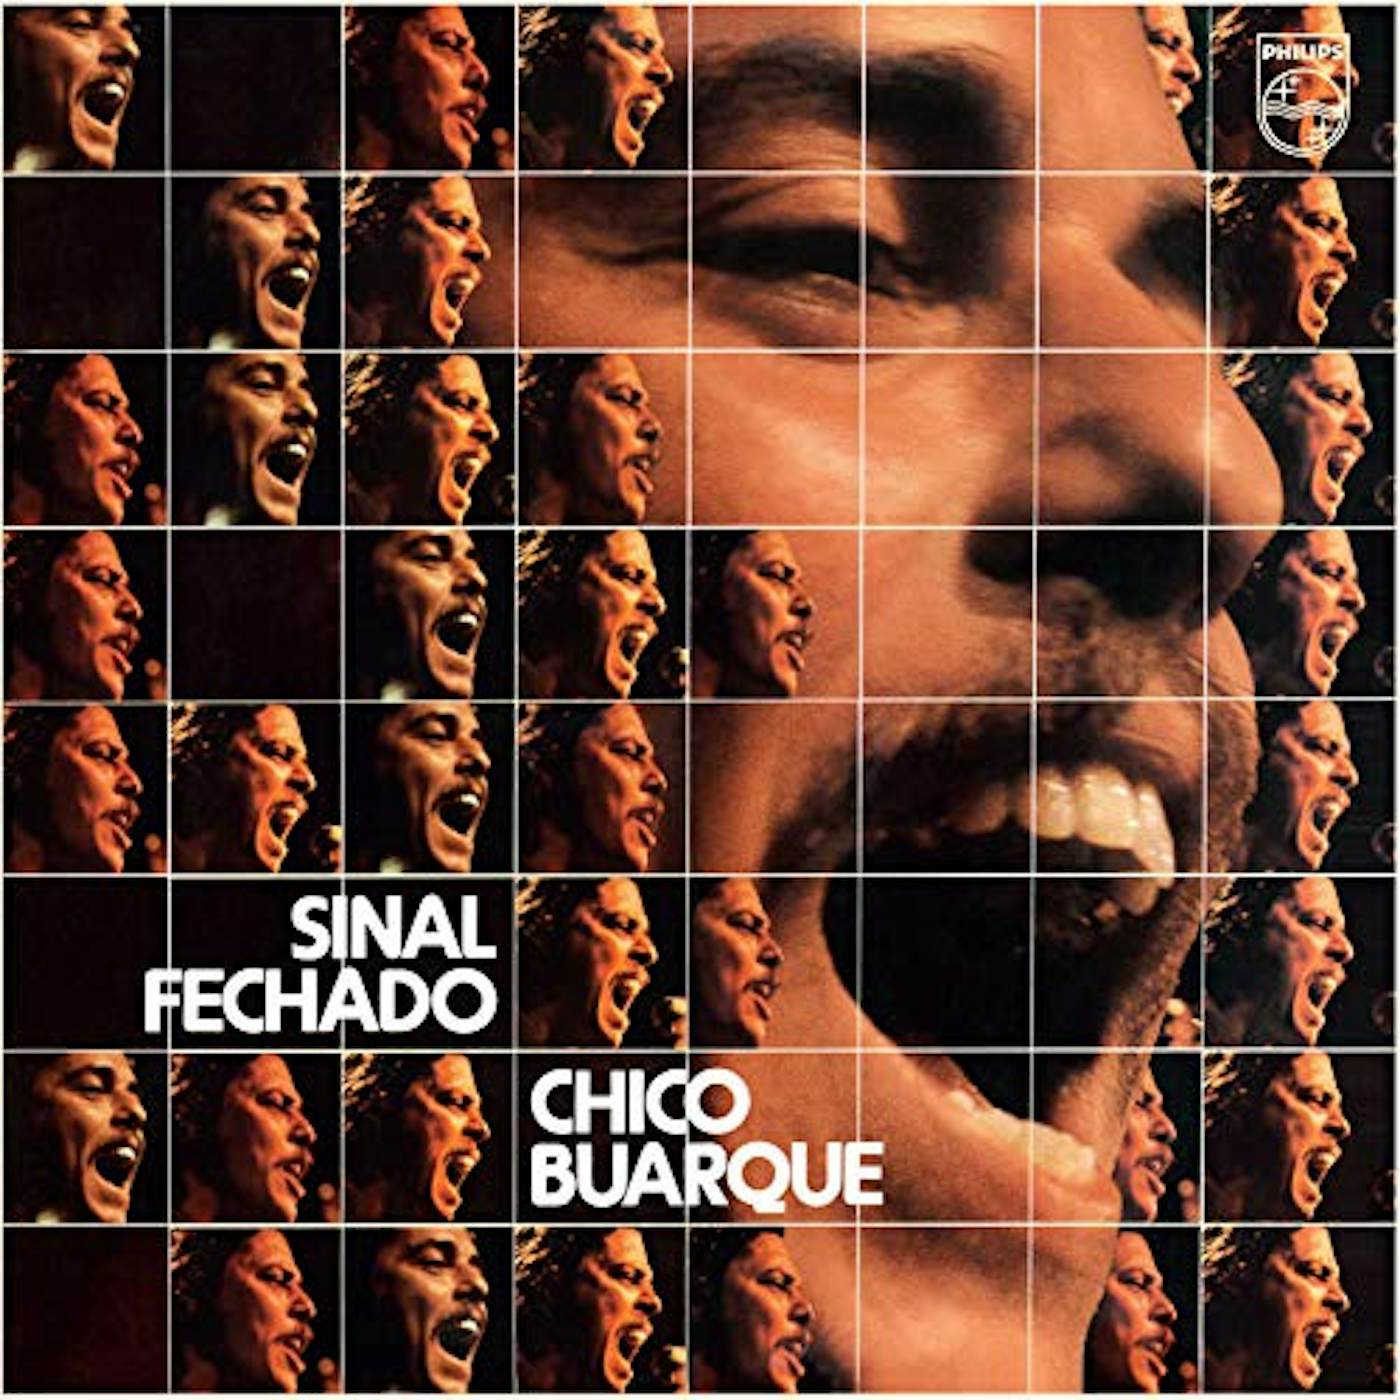 Chico Buarque Sinal Fechado Vinyl Record